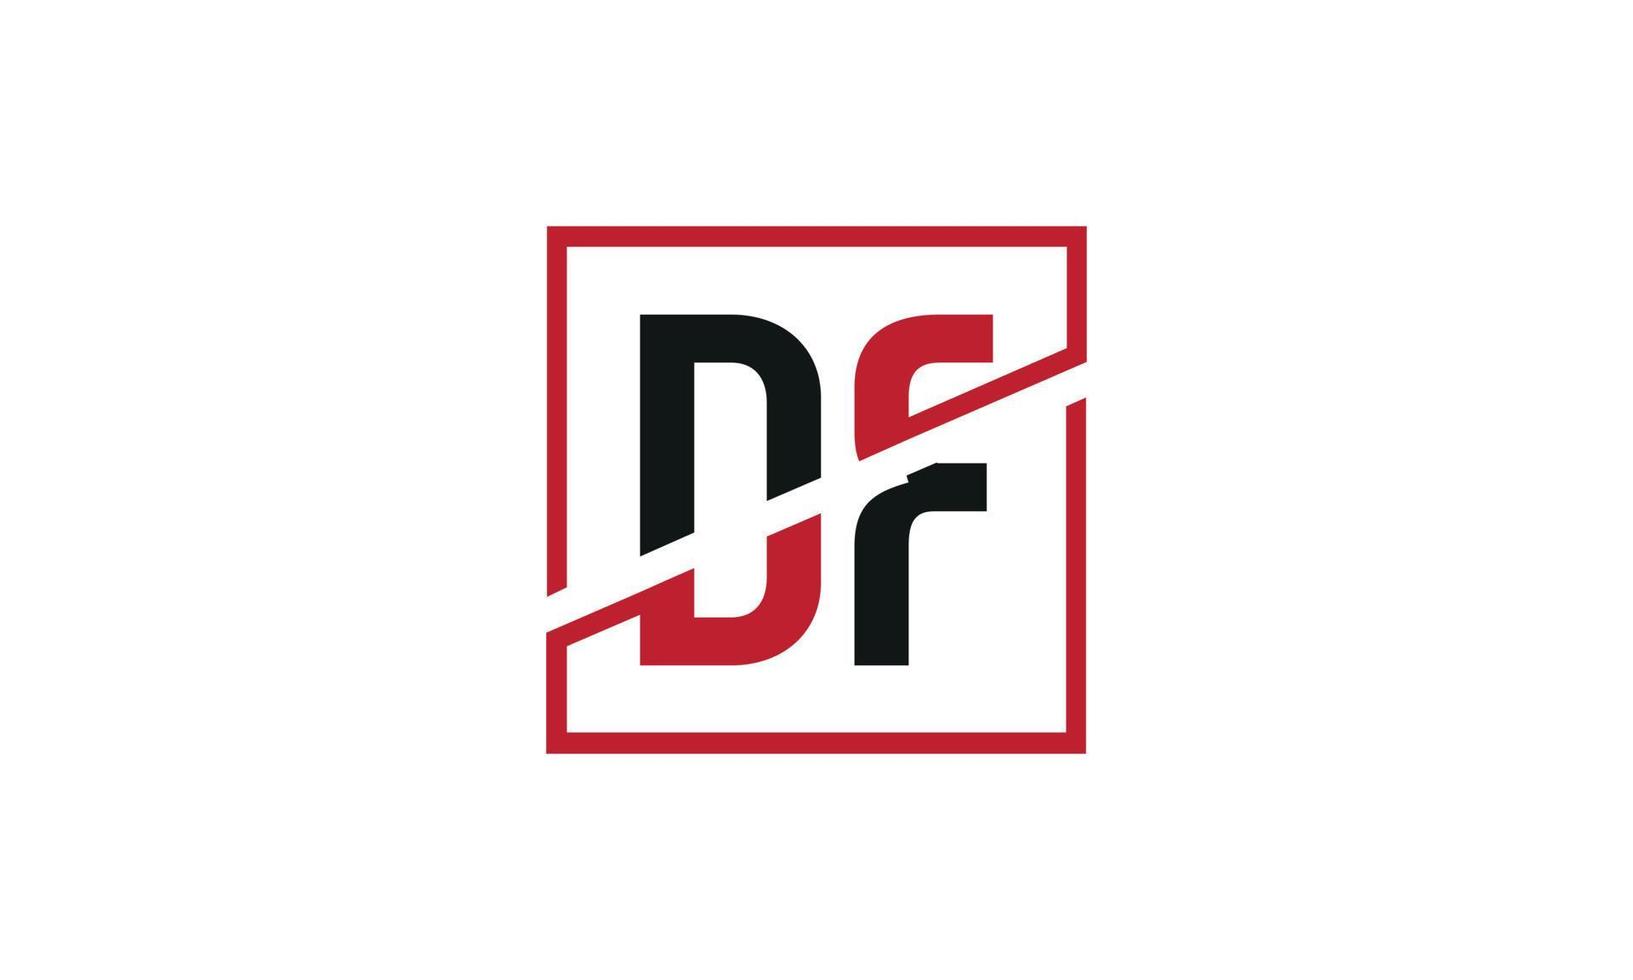 création de logo df. conception initiale du monogramme du logo de la lettre df en noir et rouge avec une forme carrée. vecteur professionnel